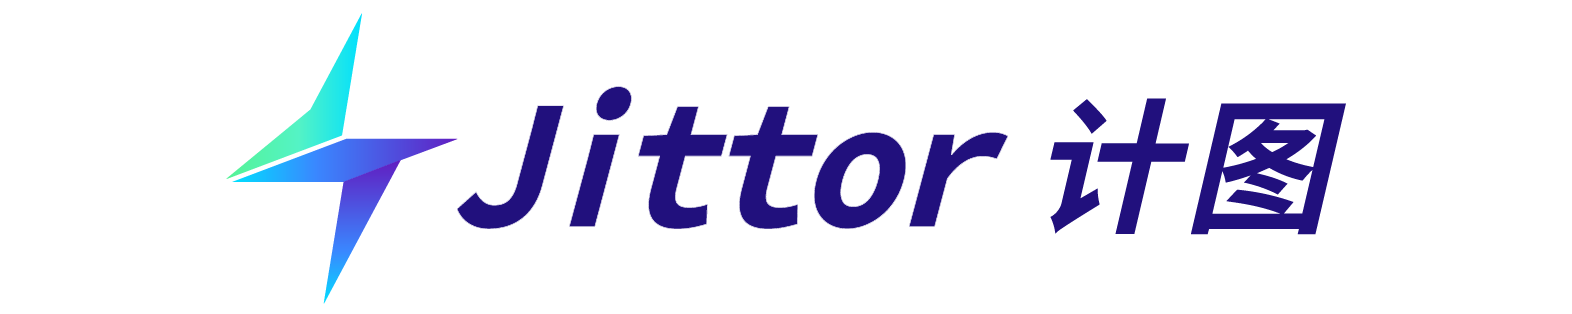 Jittor Logo